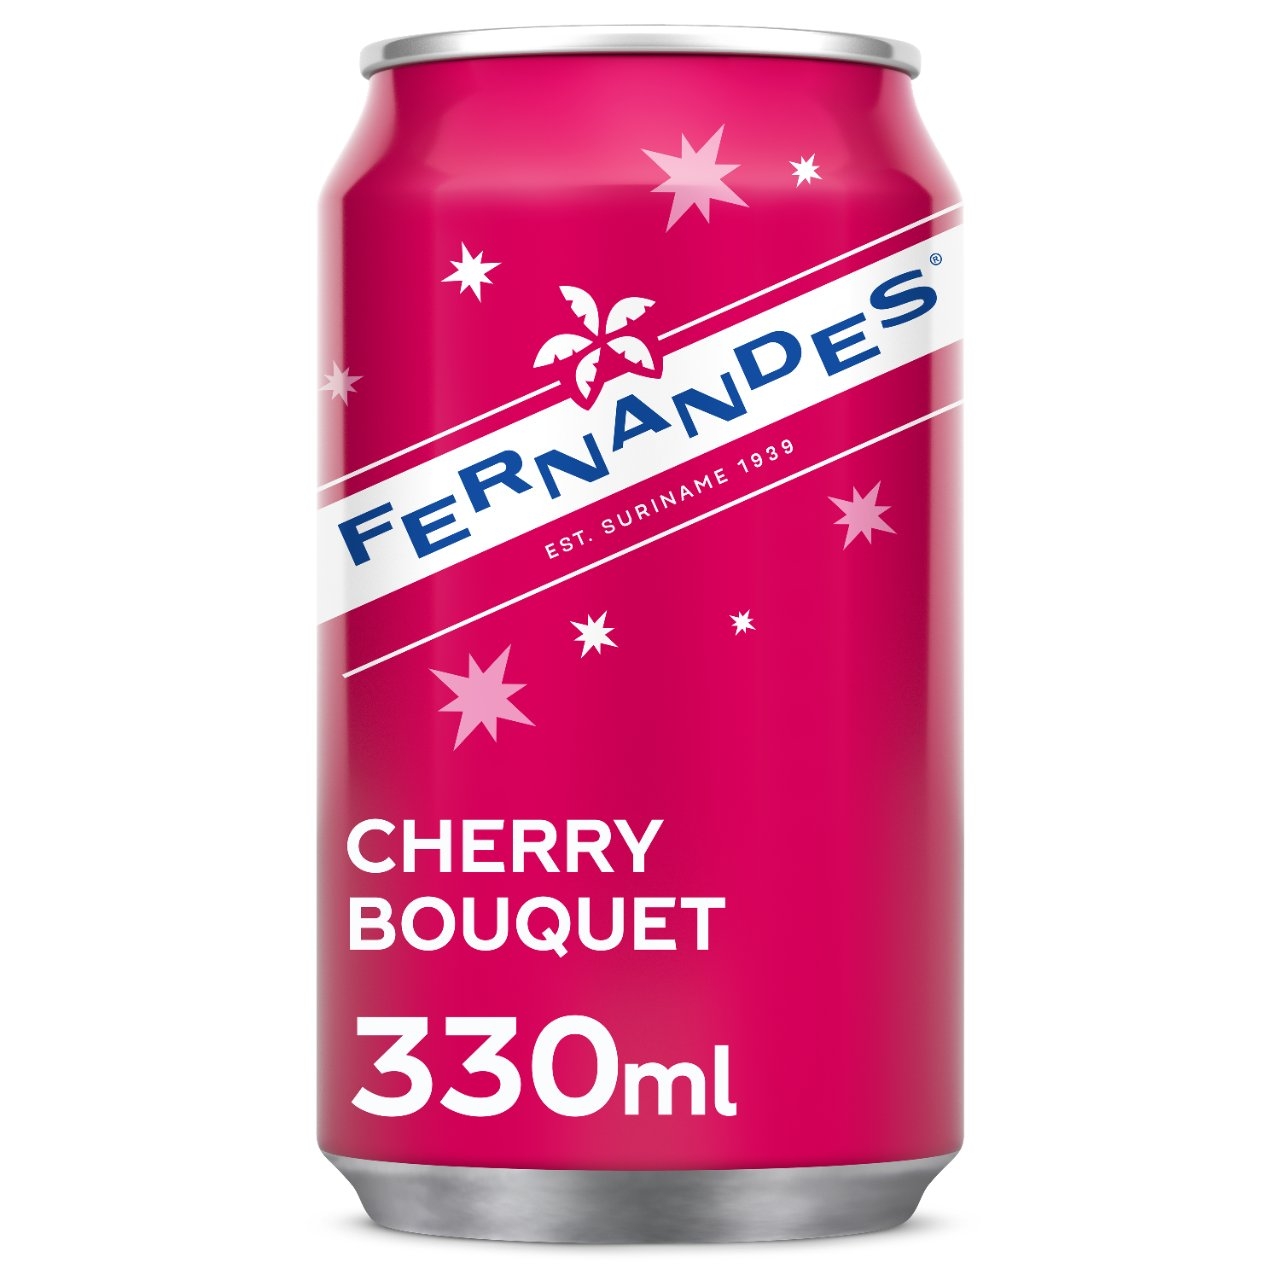 Fernandes cherry bouqet blikjes 24x0,33L